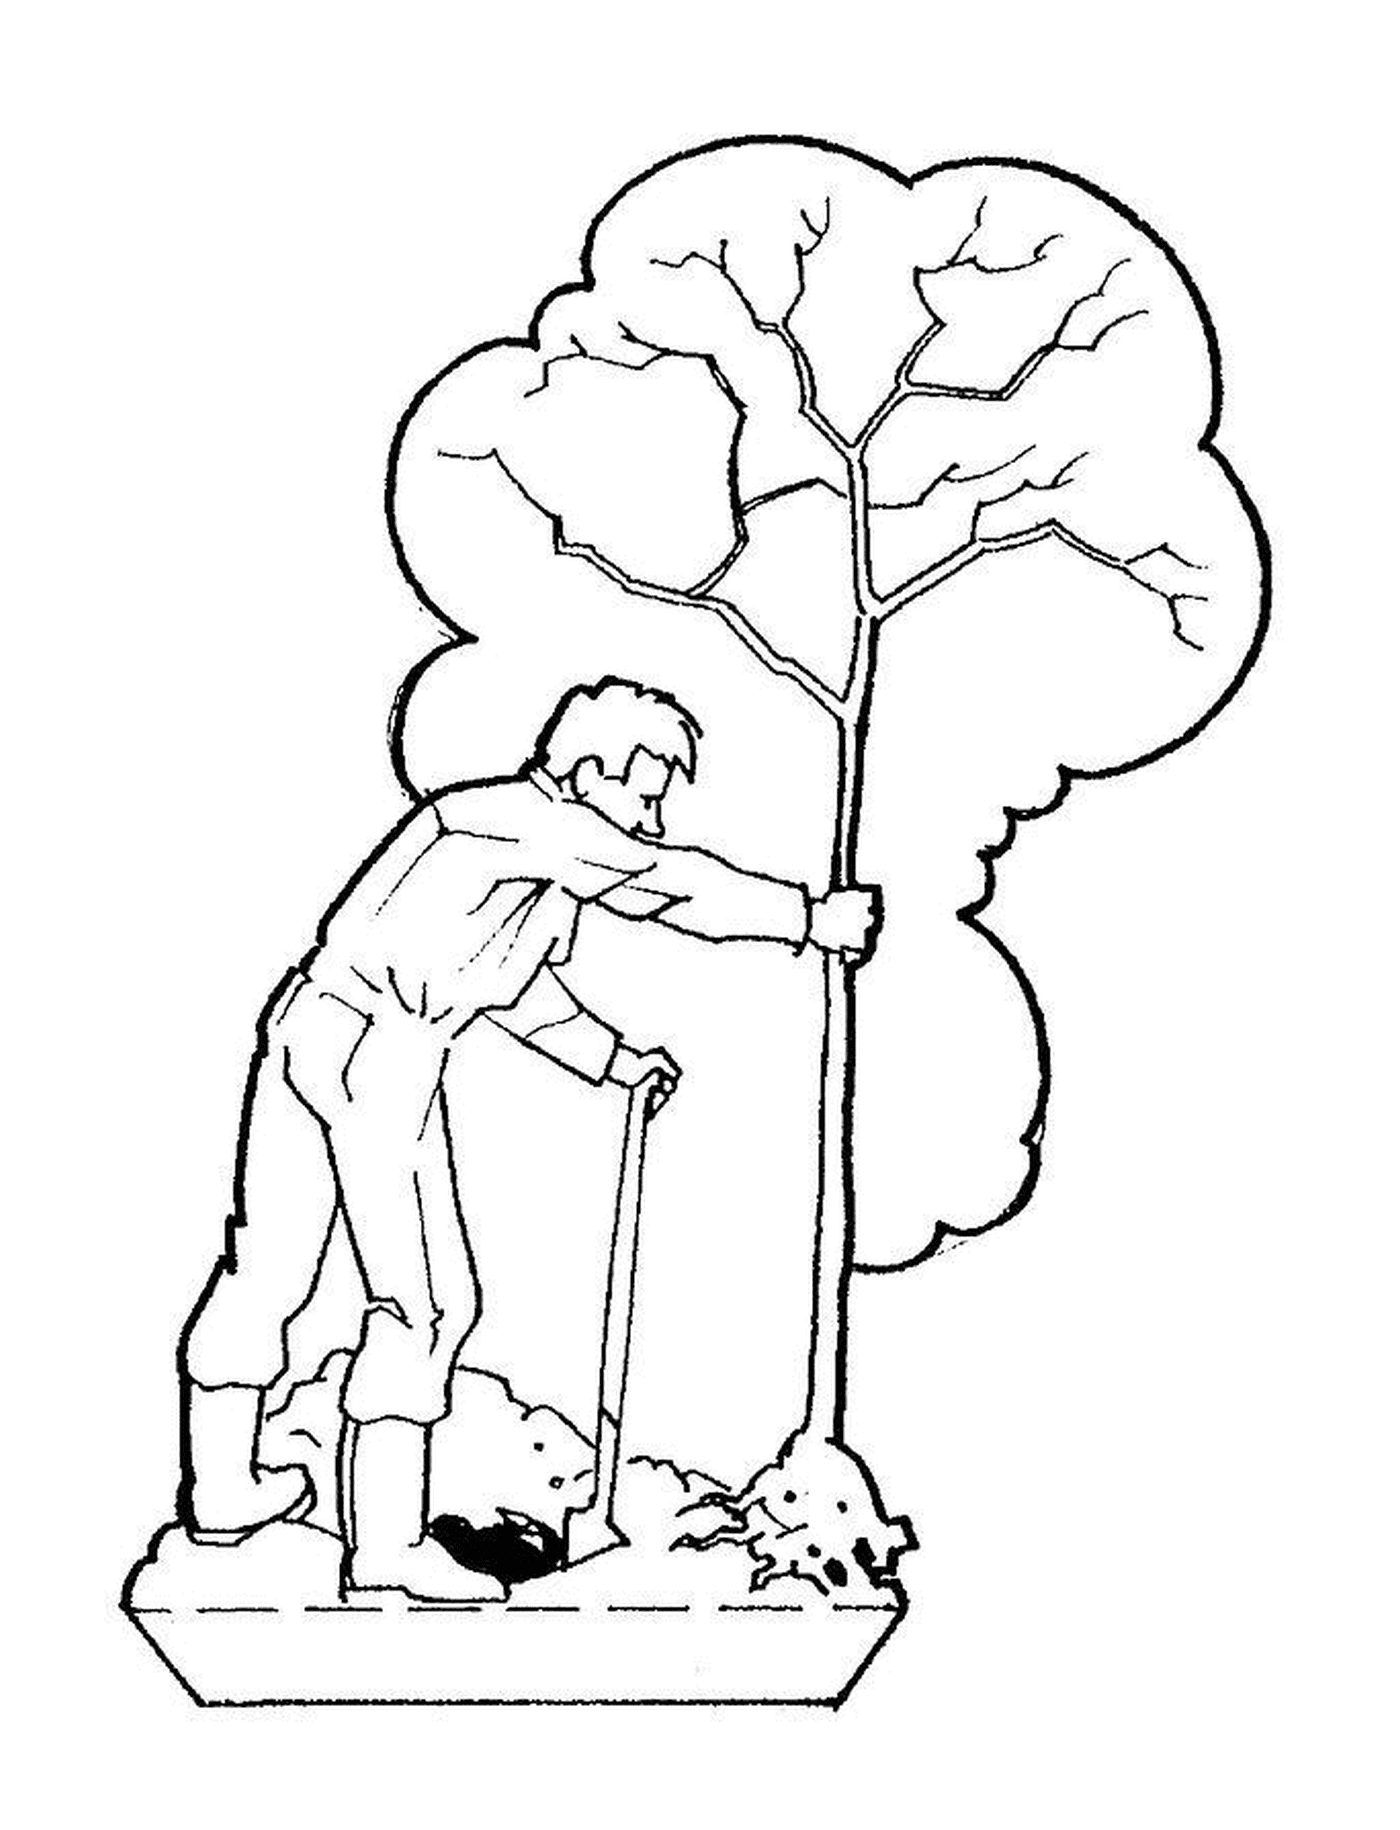  Человек резает дерево палкой 